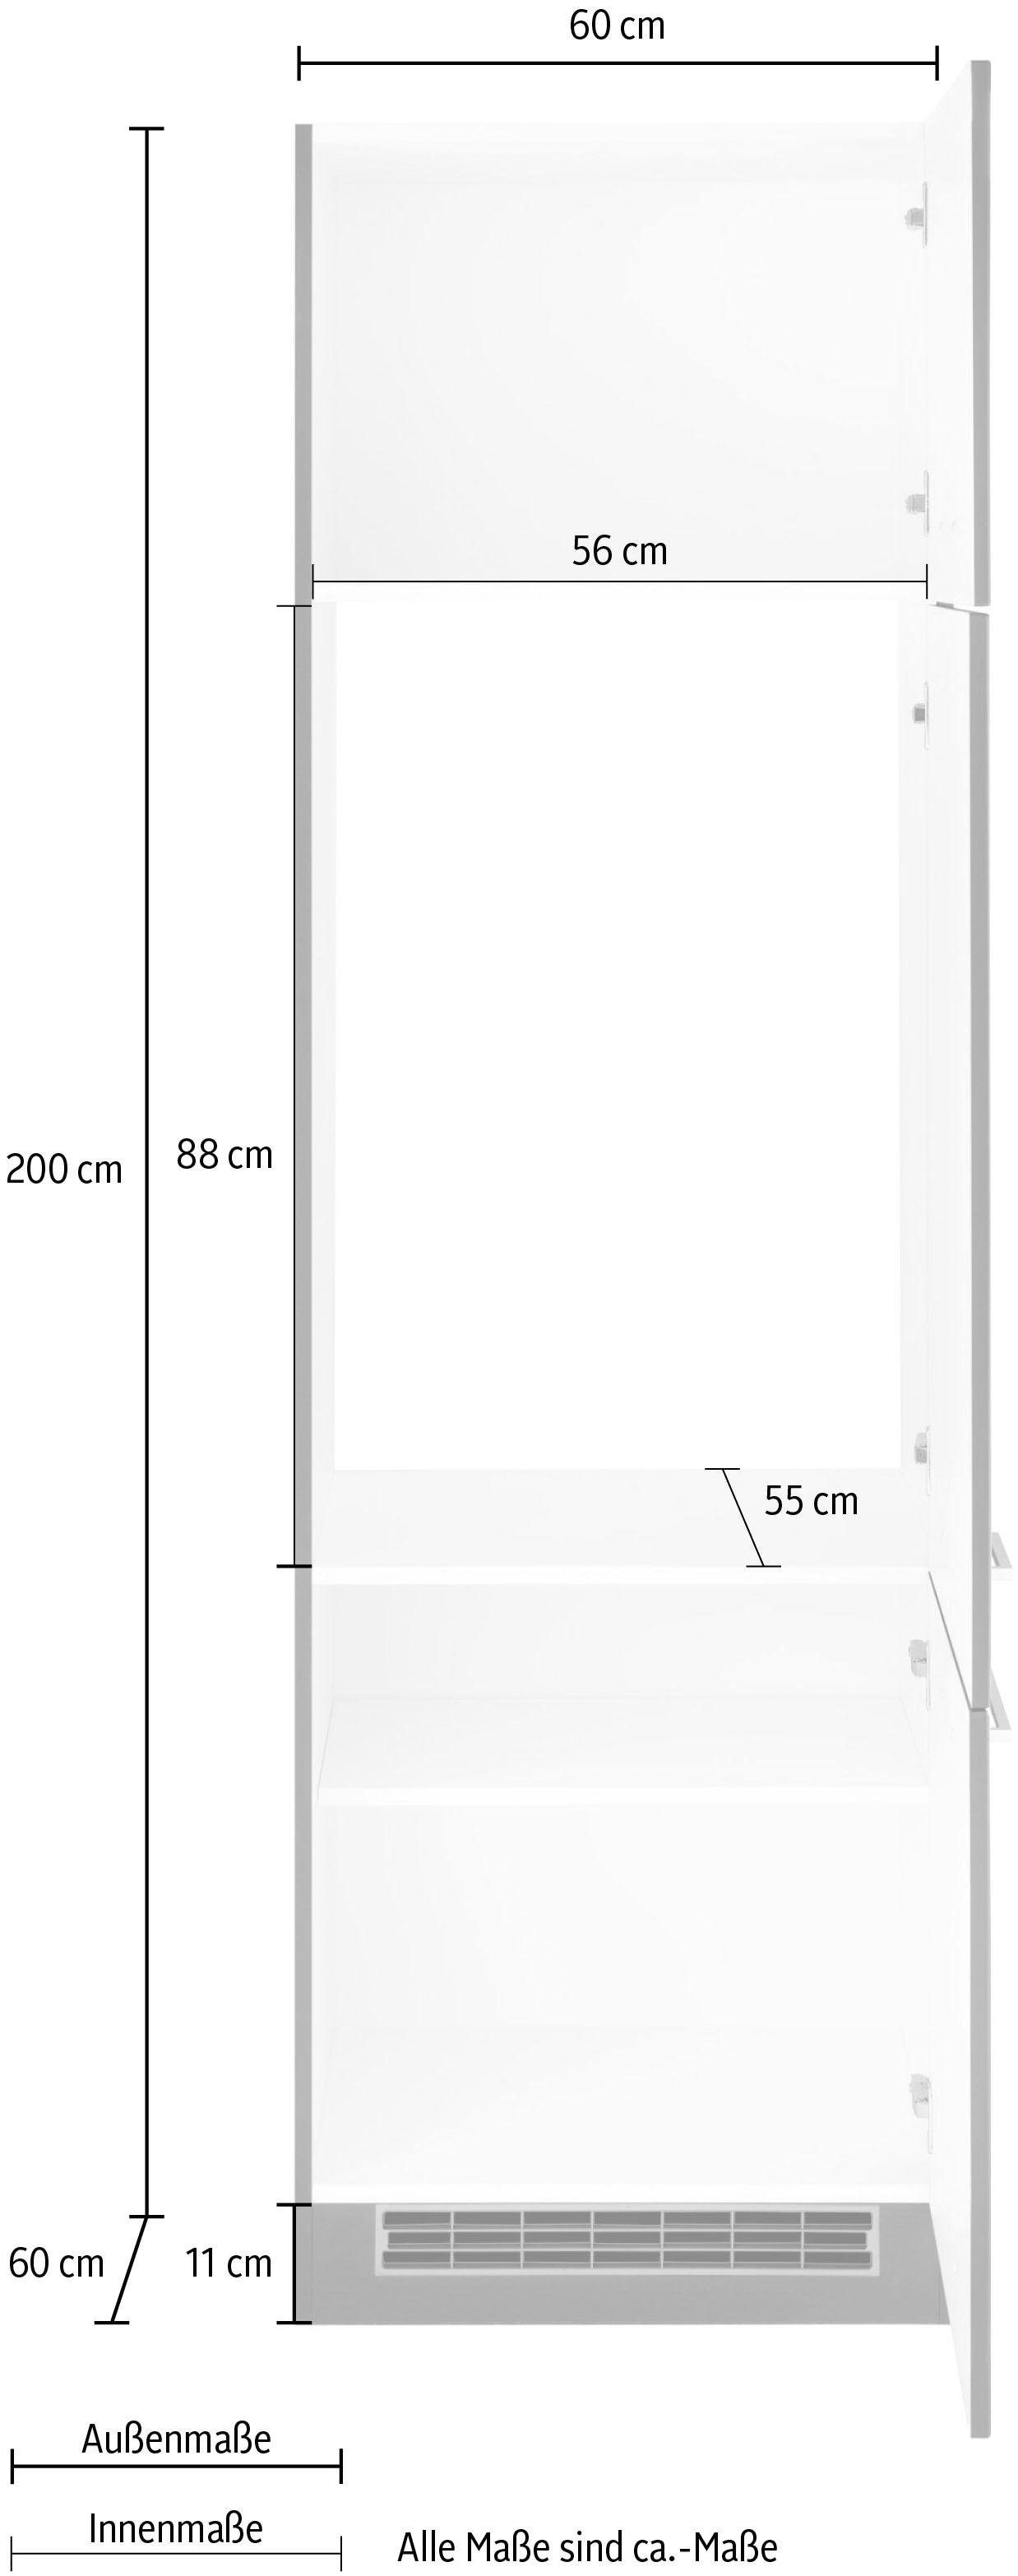 HELD MÖBEL Kühlumbauschrank »Kehl«, für Einbaukühlschrank, Nischenhöhe 88cm